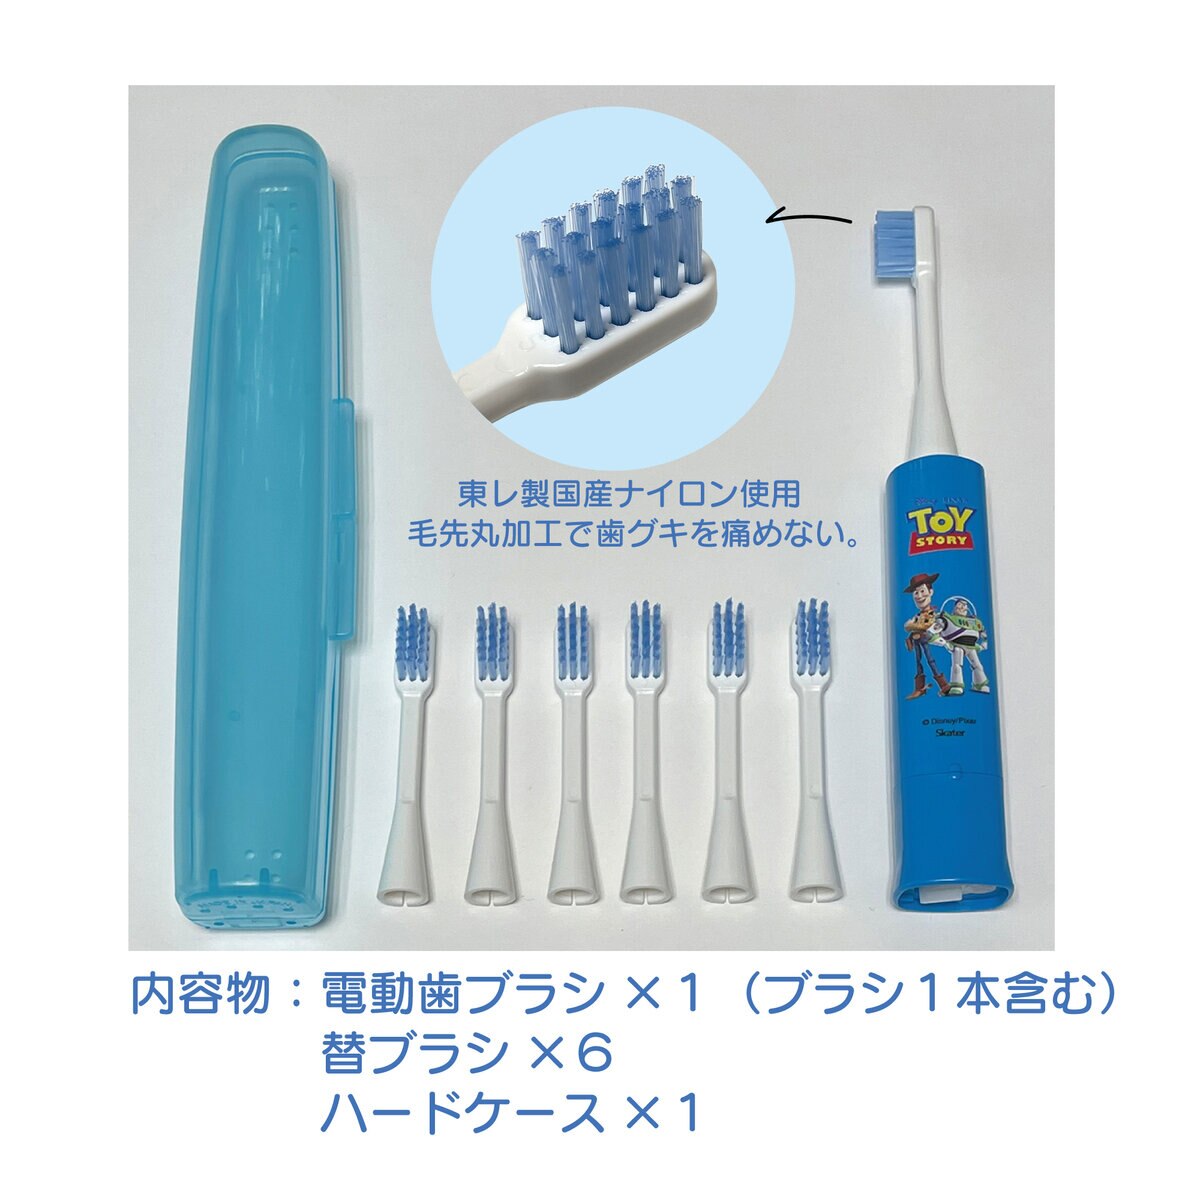 こどもハピカ はじめてセットキャラクター 電動歯ブラシ 本体 + 替ブラシ6本 | Costco Japan